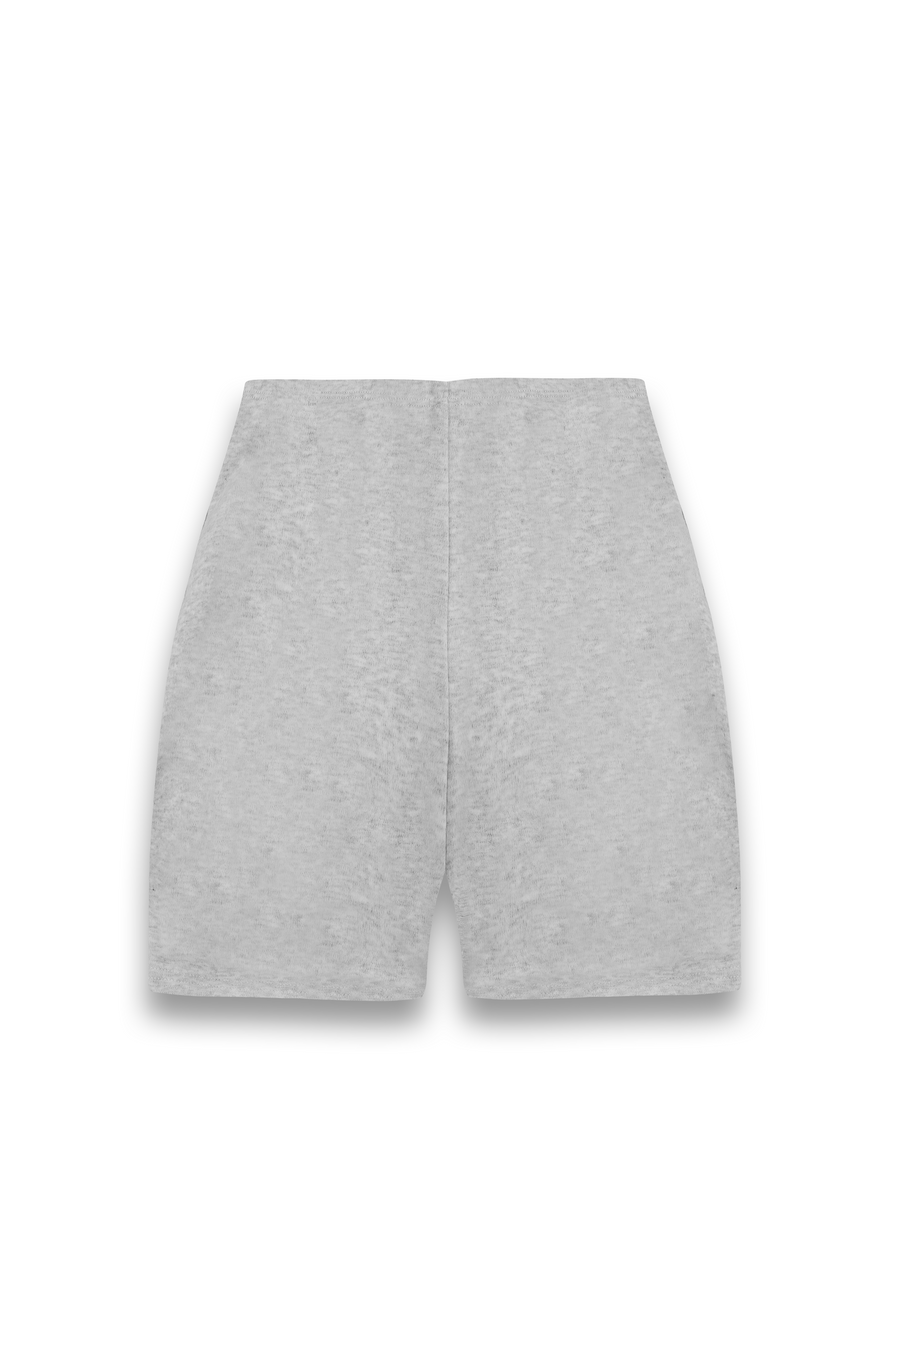 YOGA Stretch Shorts in Grey Marl